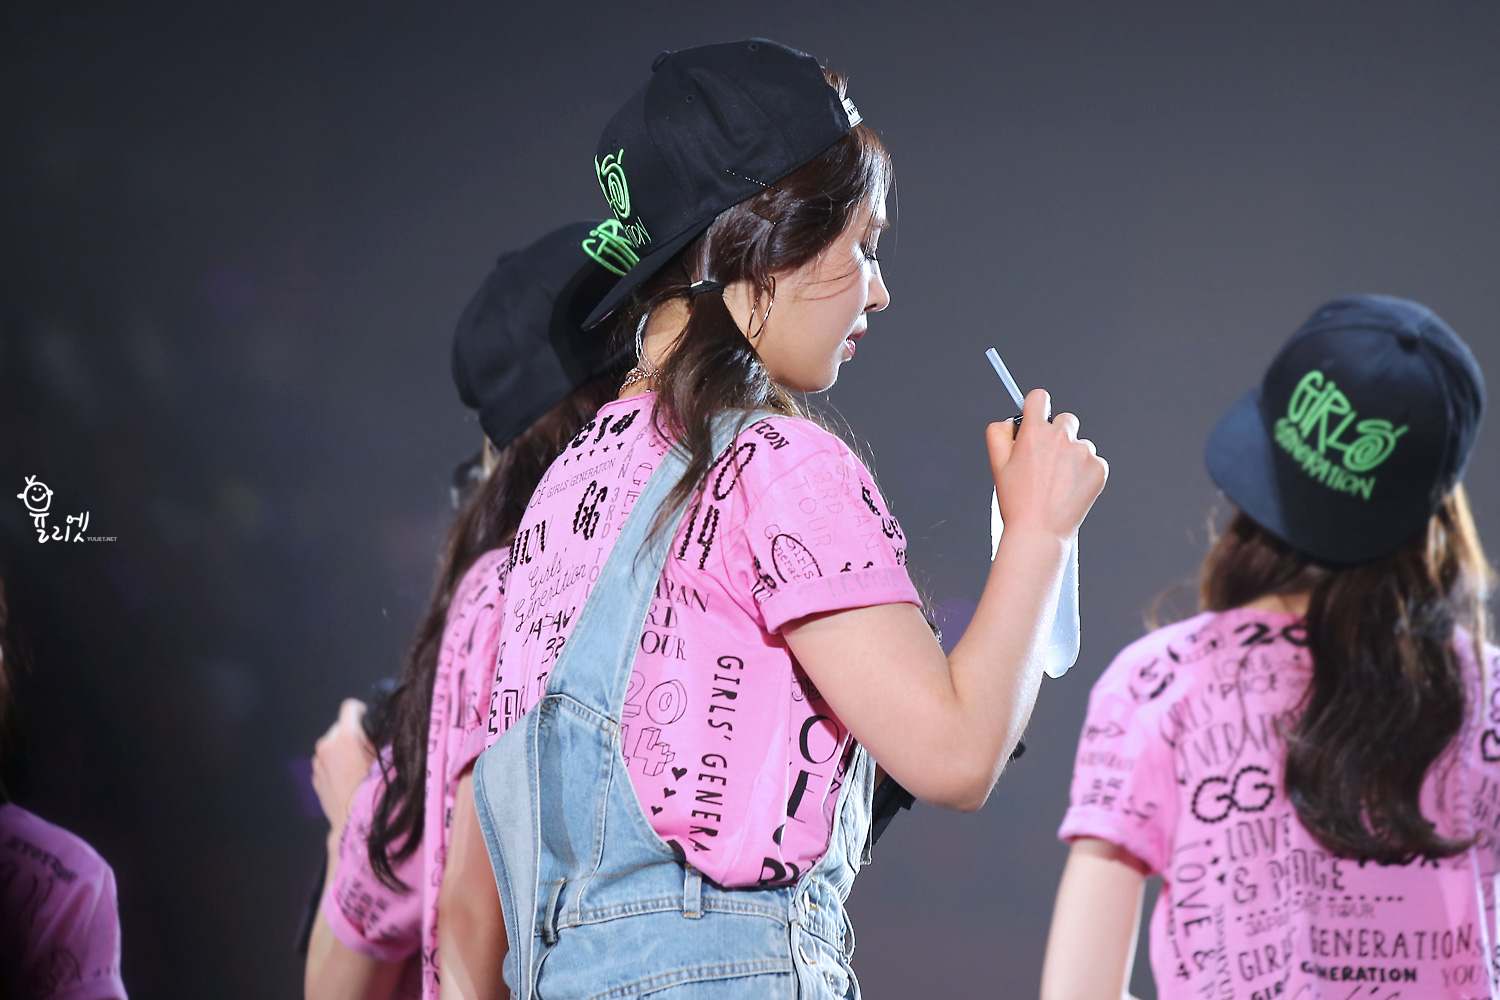 Yuri @ Japan Tour 2014 in Kobe